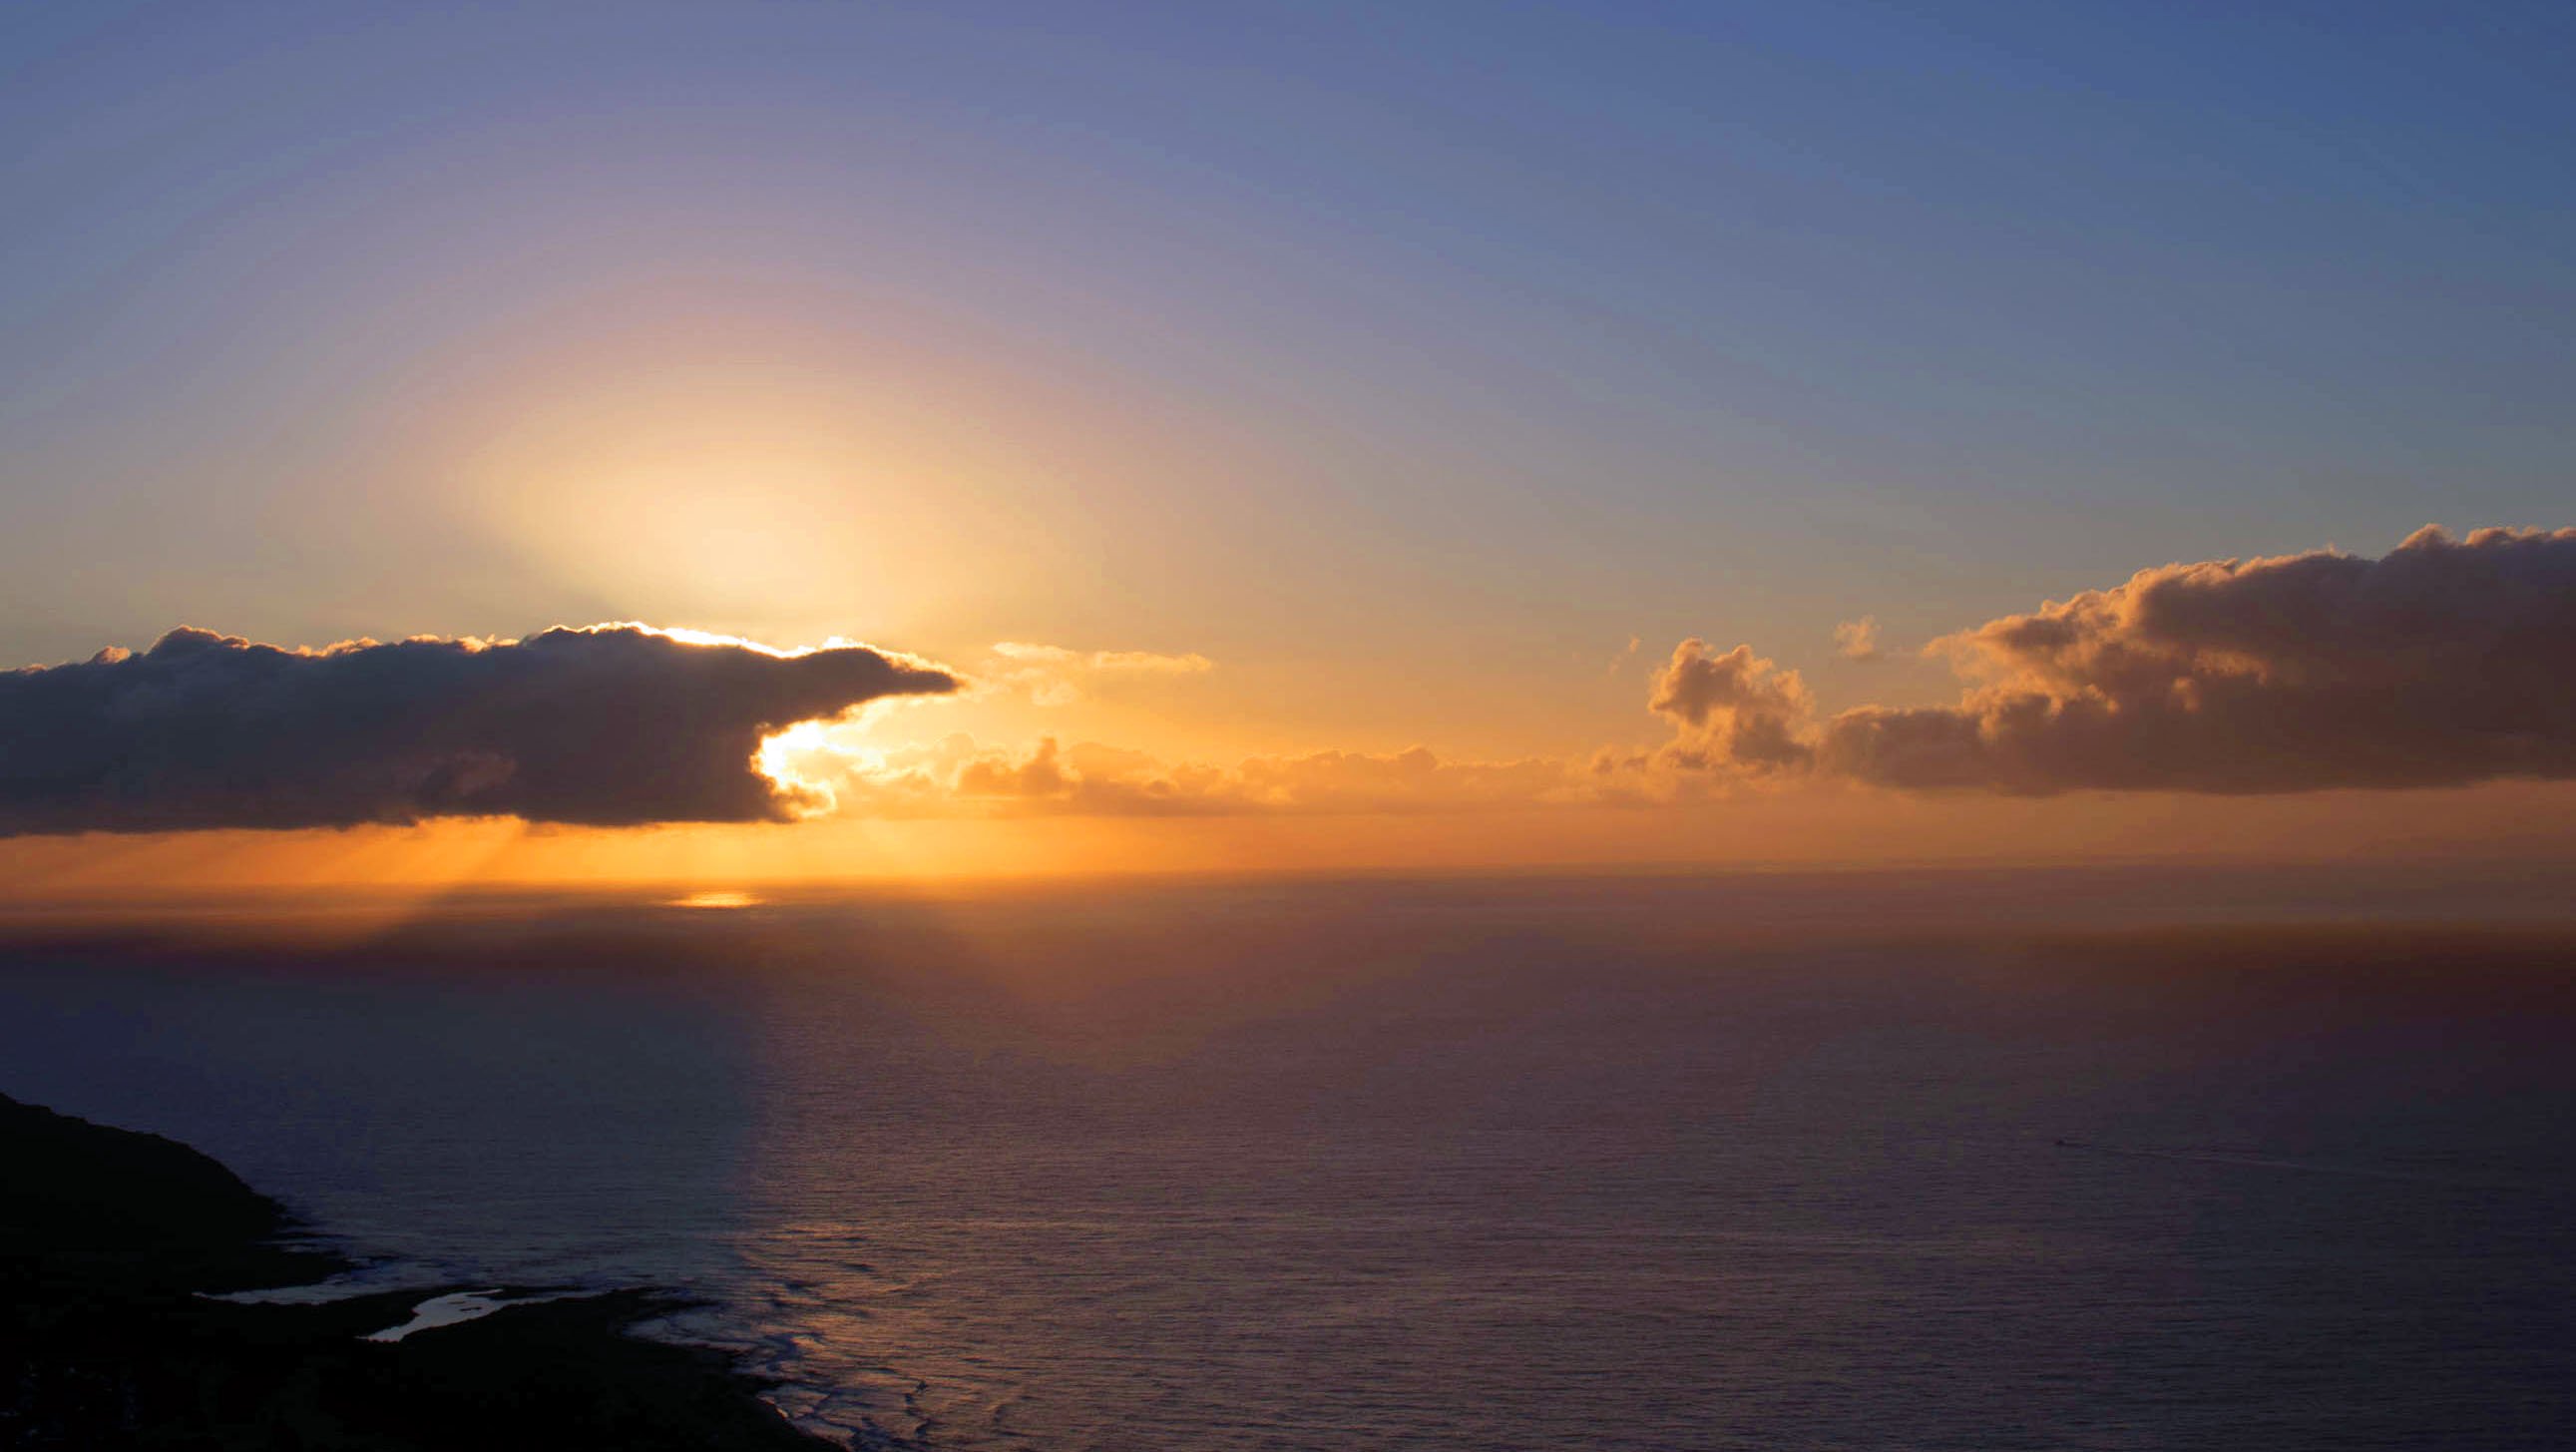 Sunrise at Koko crater, Oahu, Hawai'i